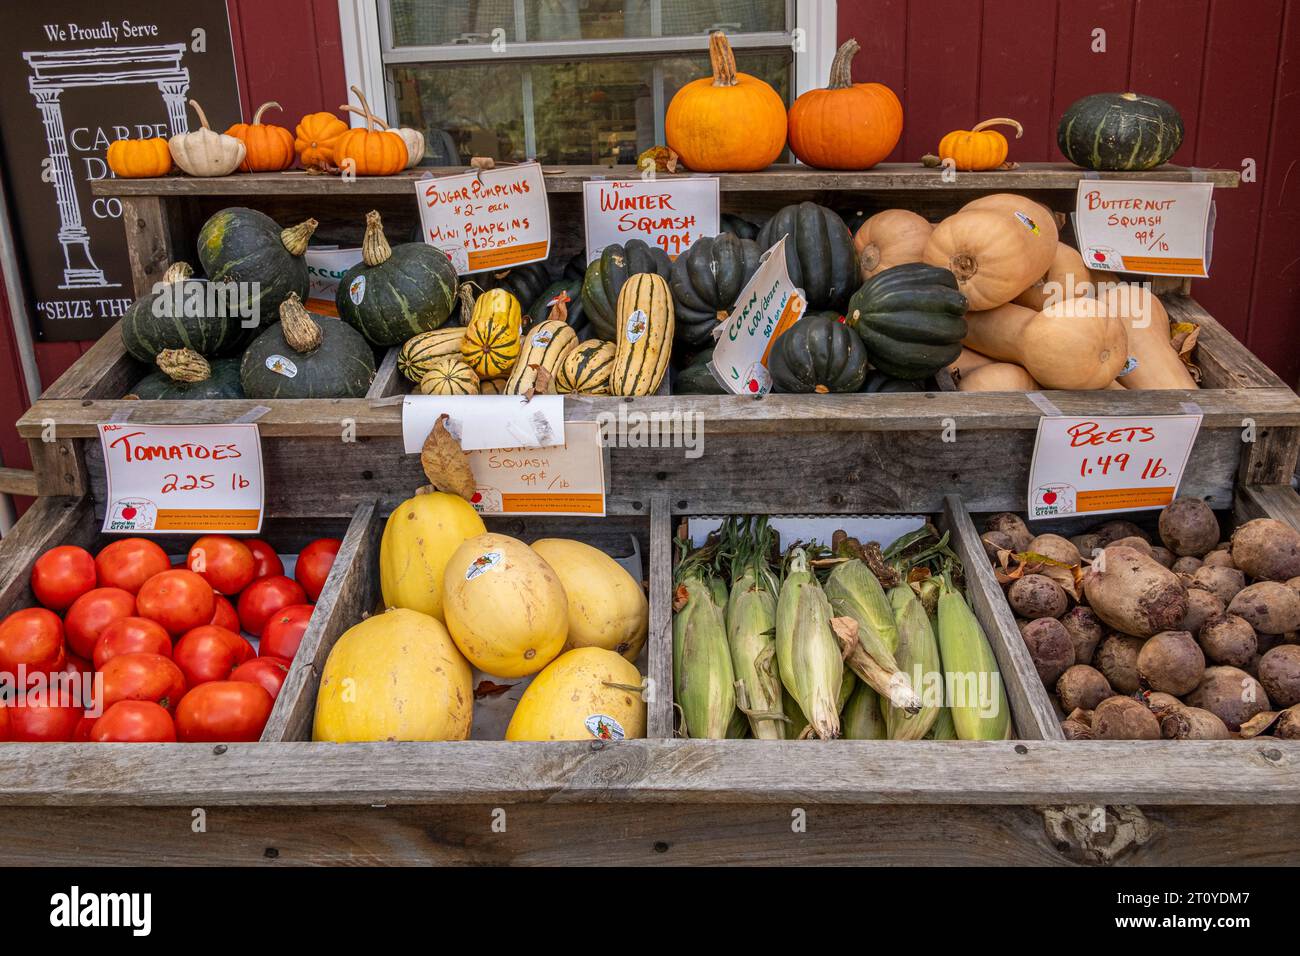 Roadside stand selling vegetables in Massachusetts Stock Photo